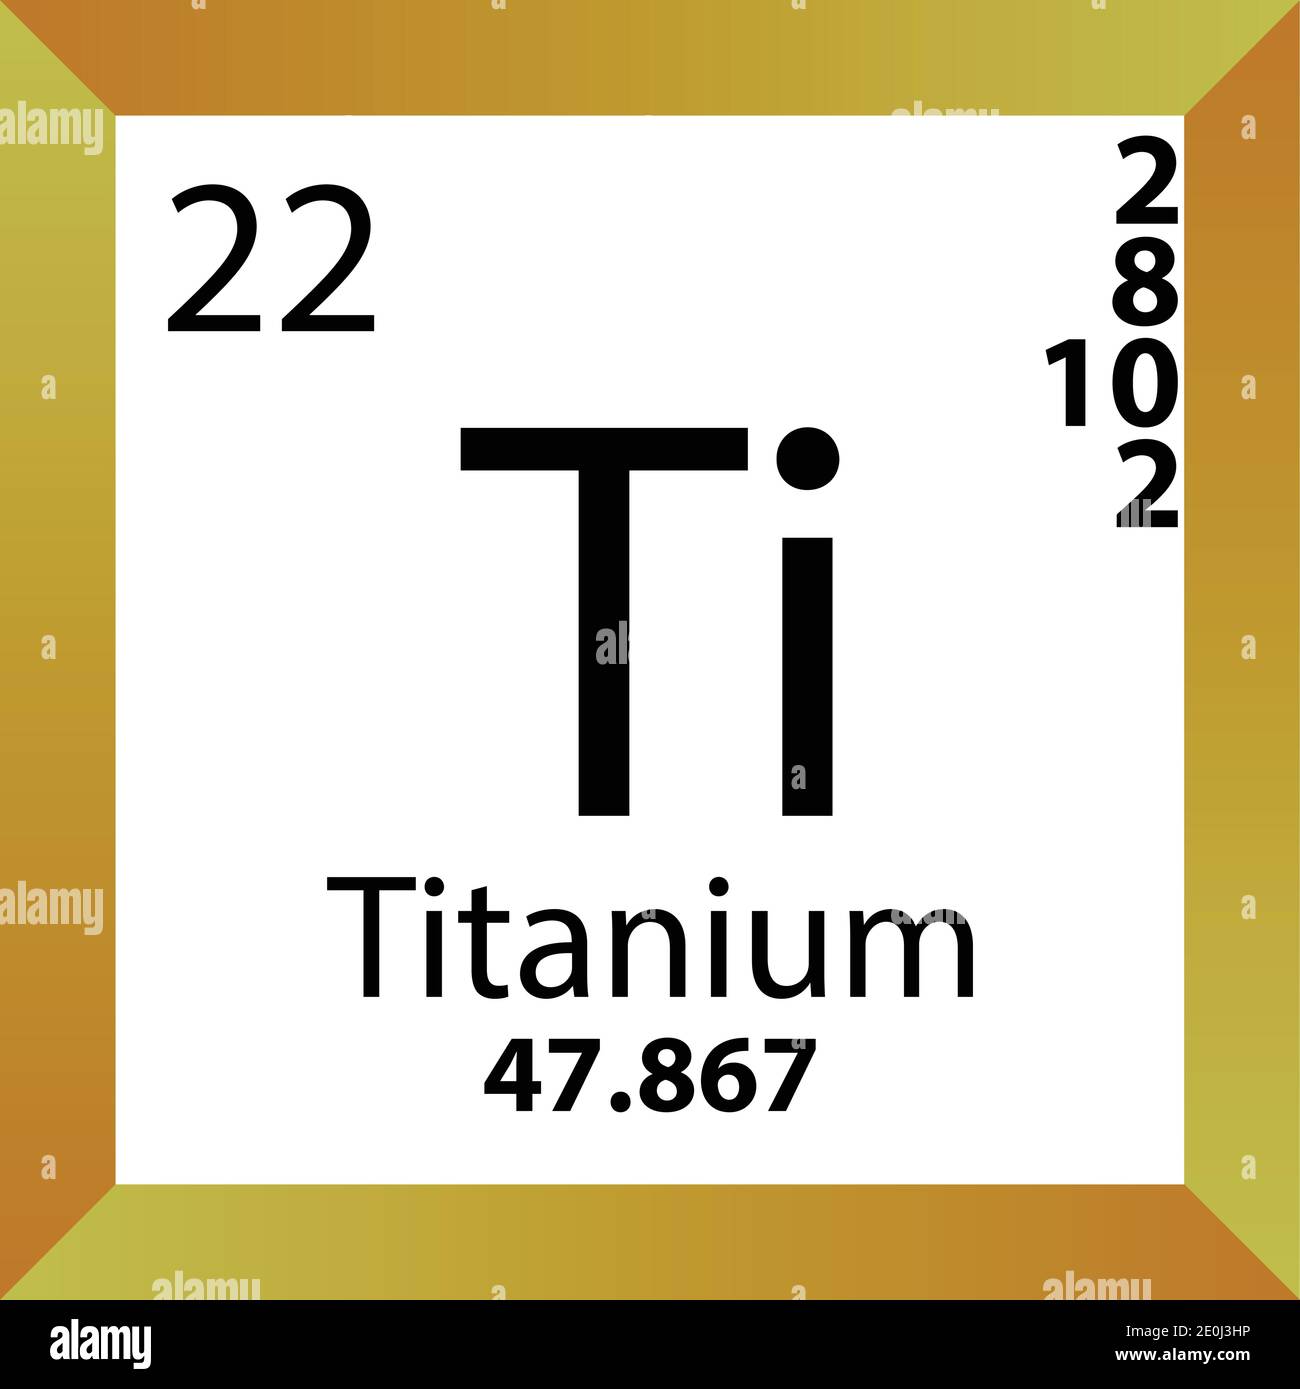 Titanium - Energy Education